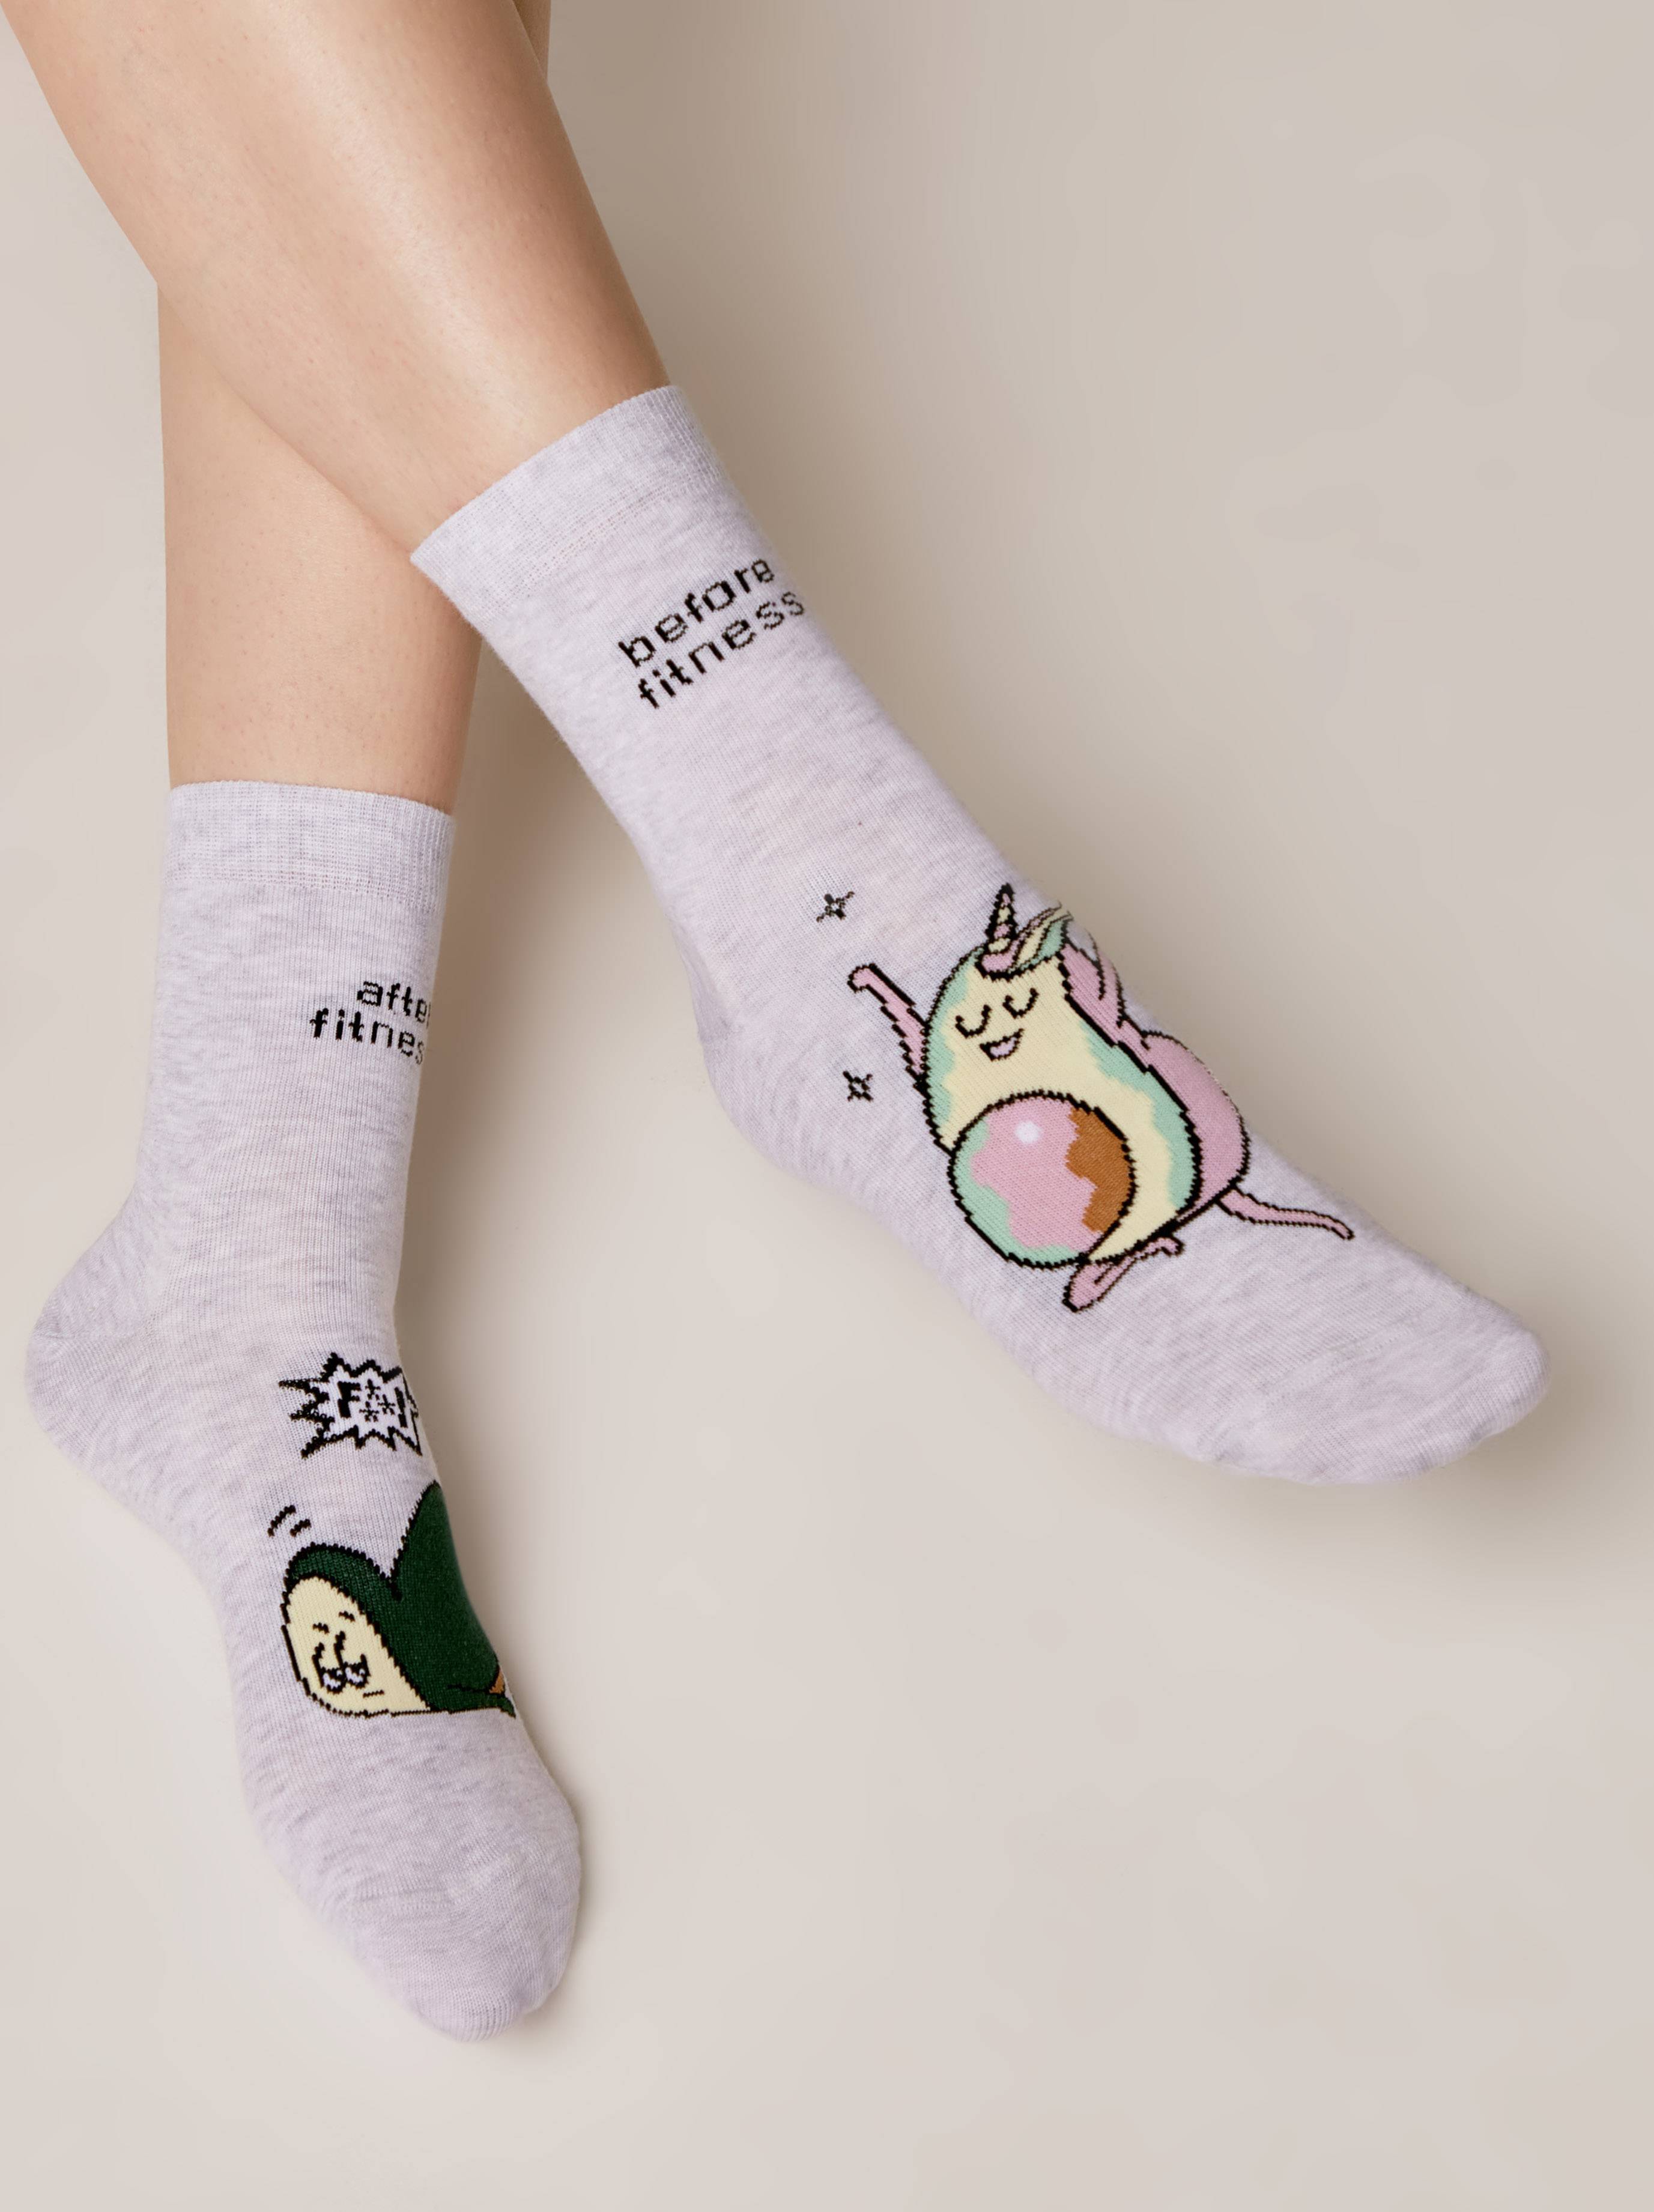 Хлопковые носки с рисунком «Fitness avocado» Conte светло-серого цвета